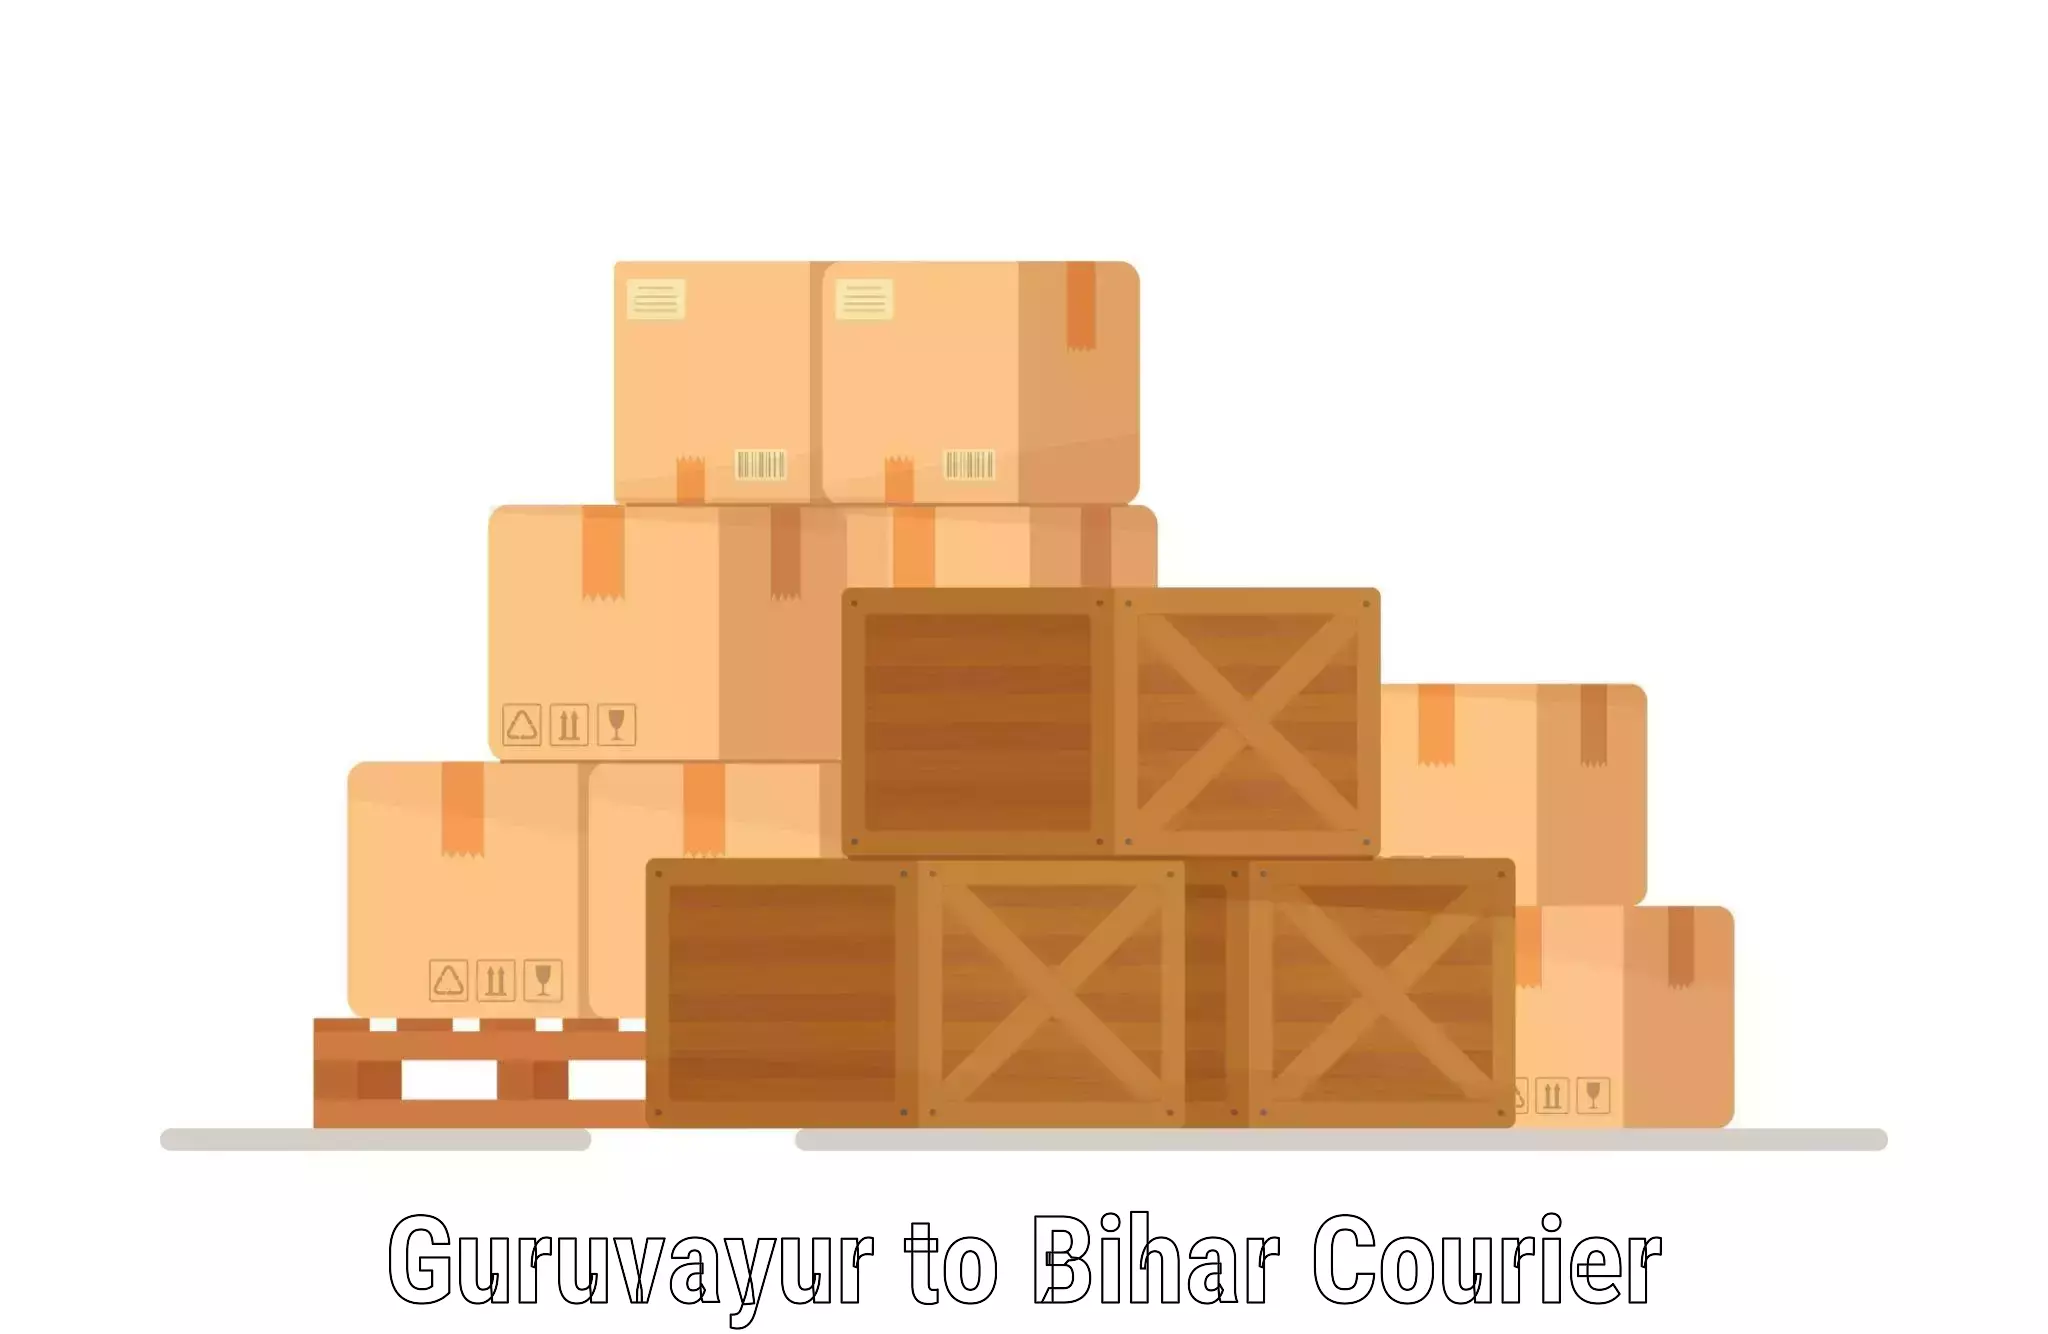 Tech-enabled shipping Guruvayur to Biraul